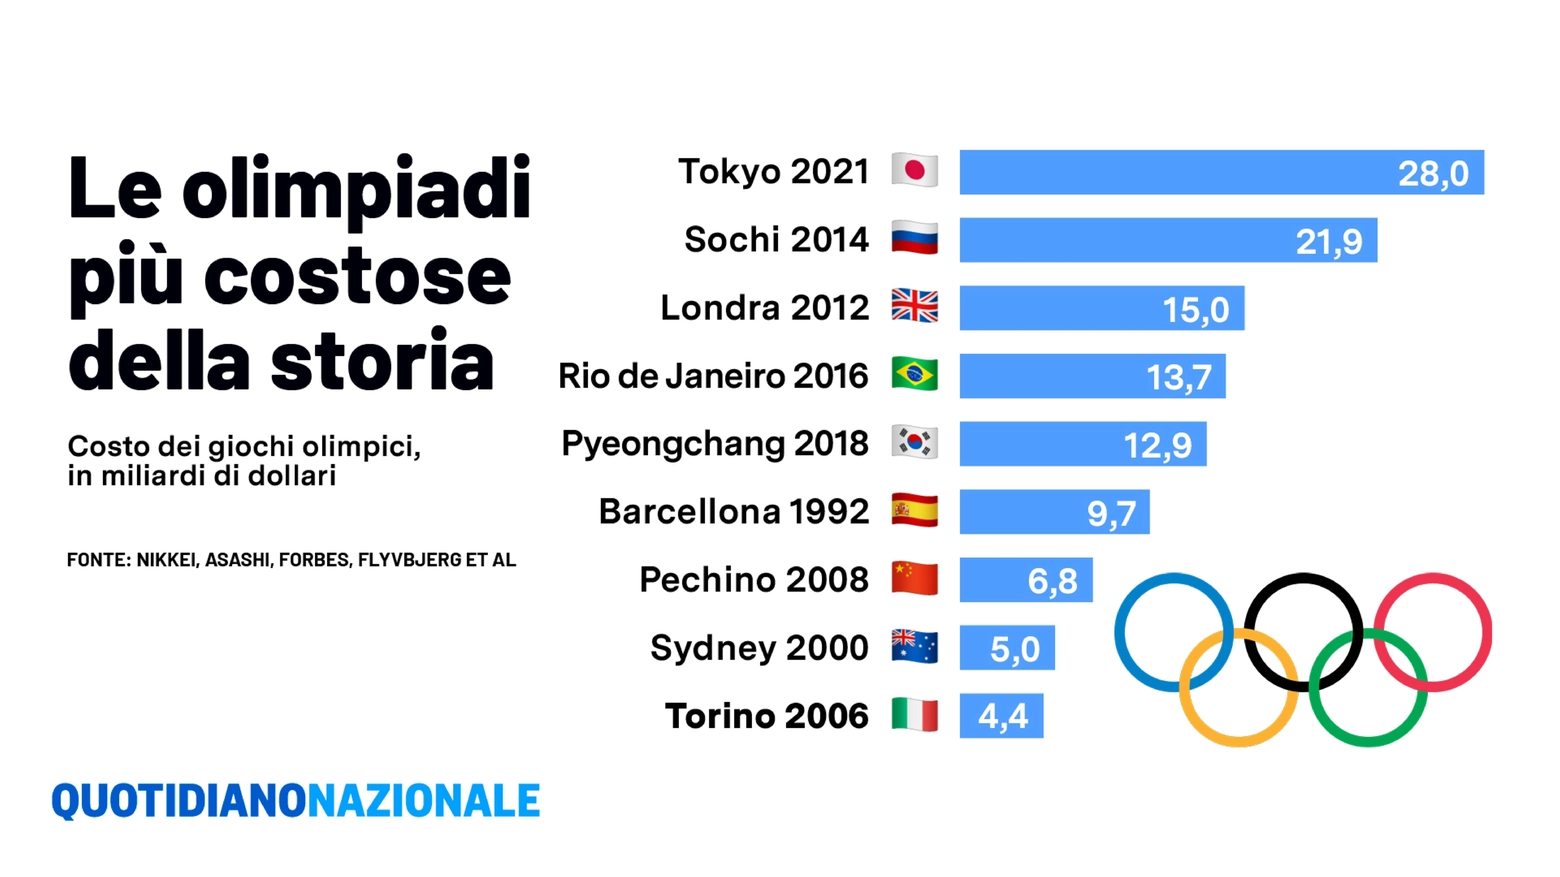 La classifica delle Olimpiadi più costose